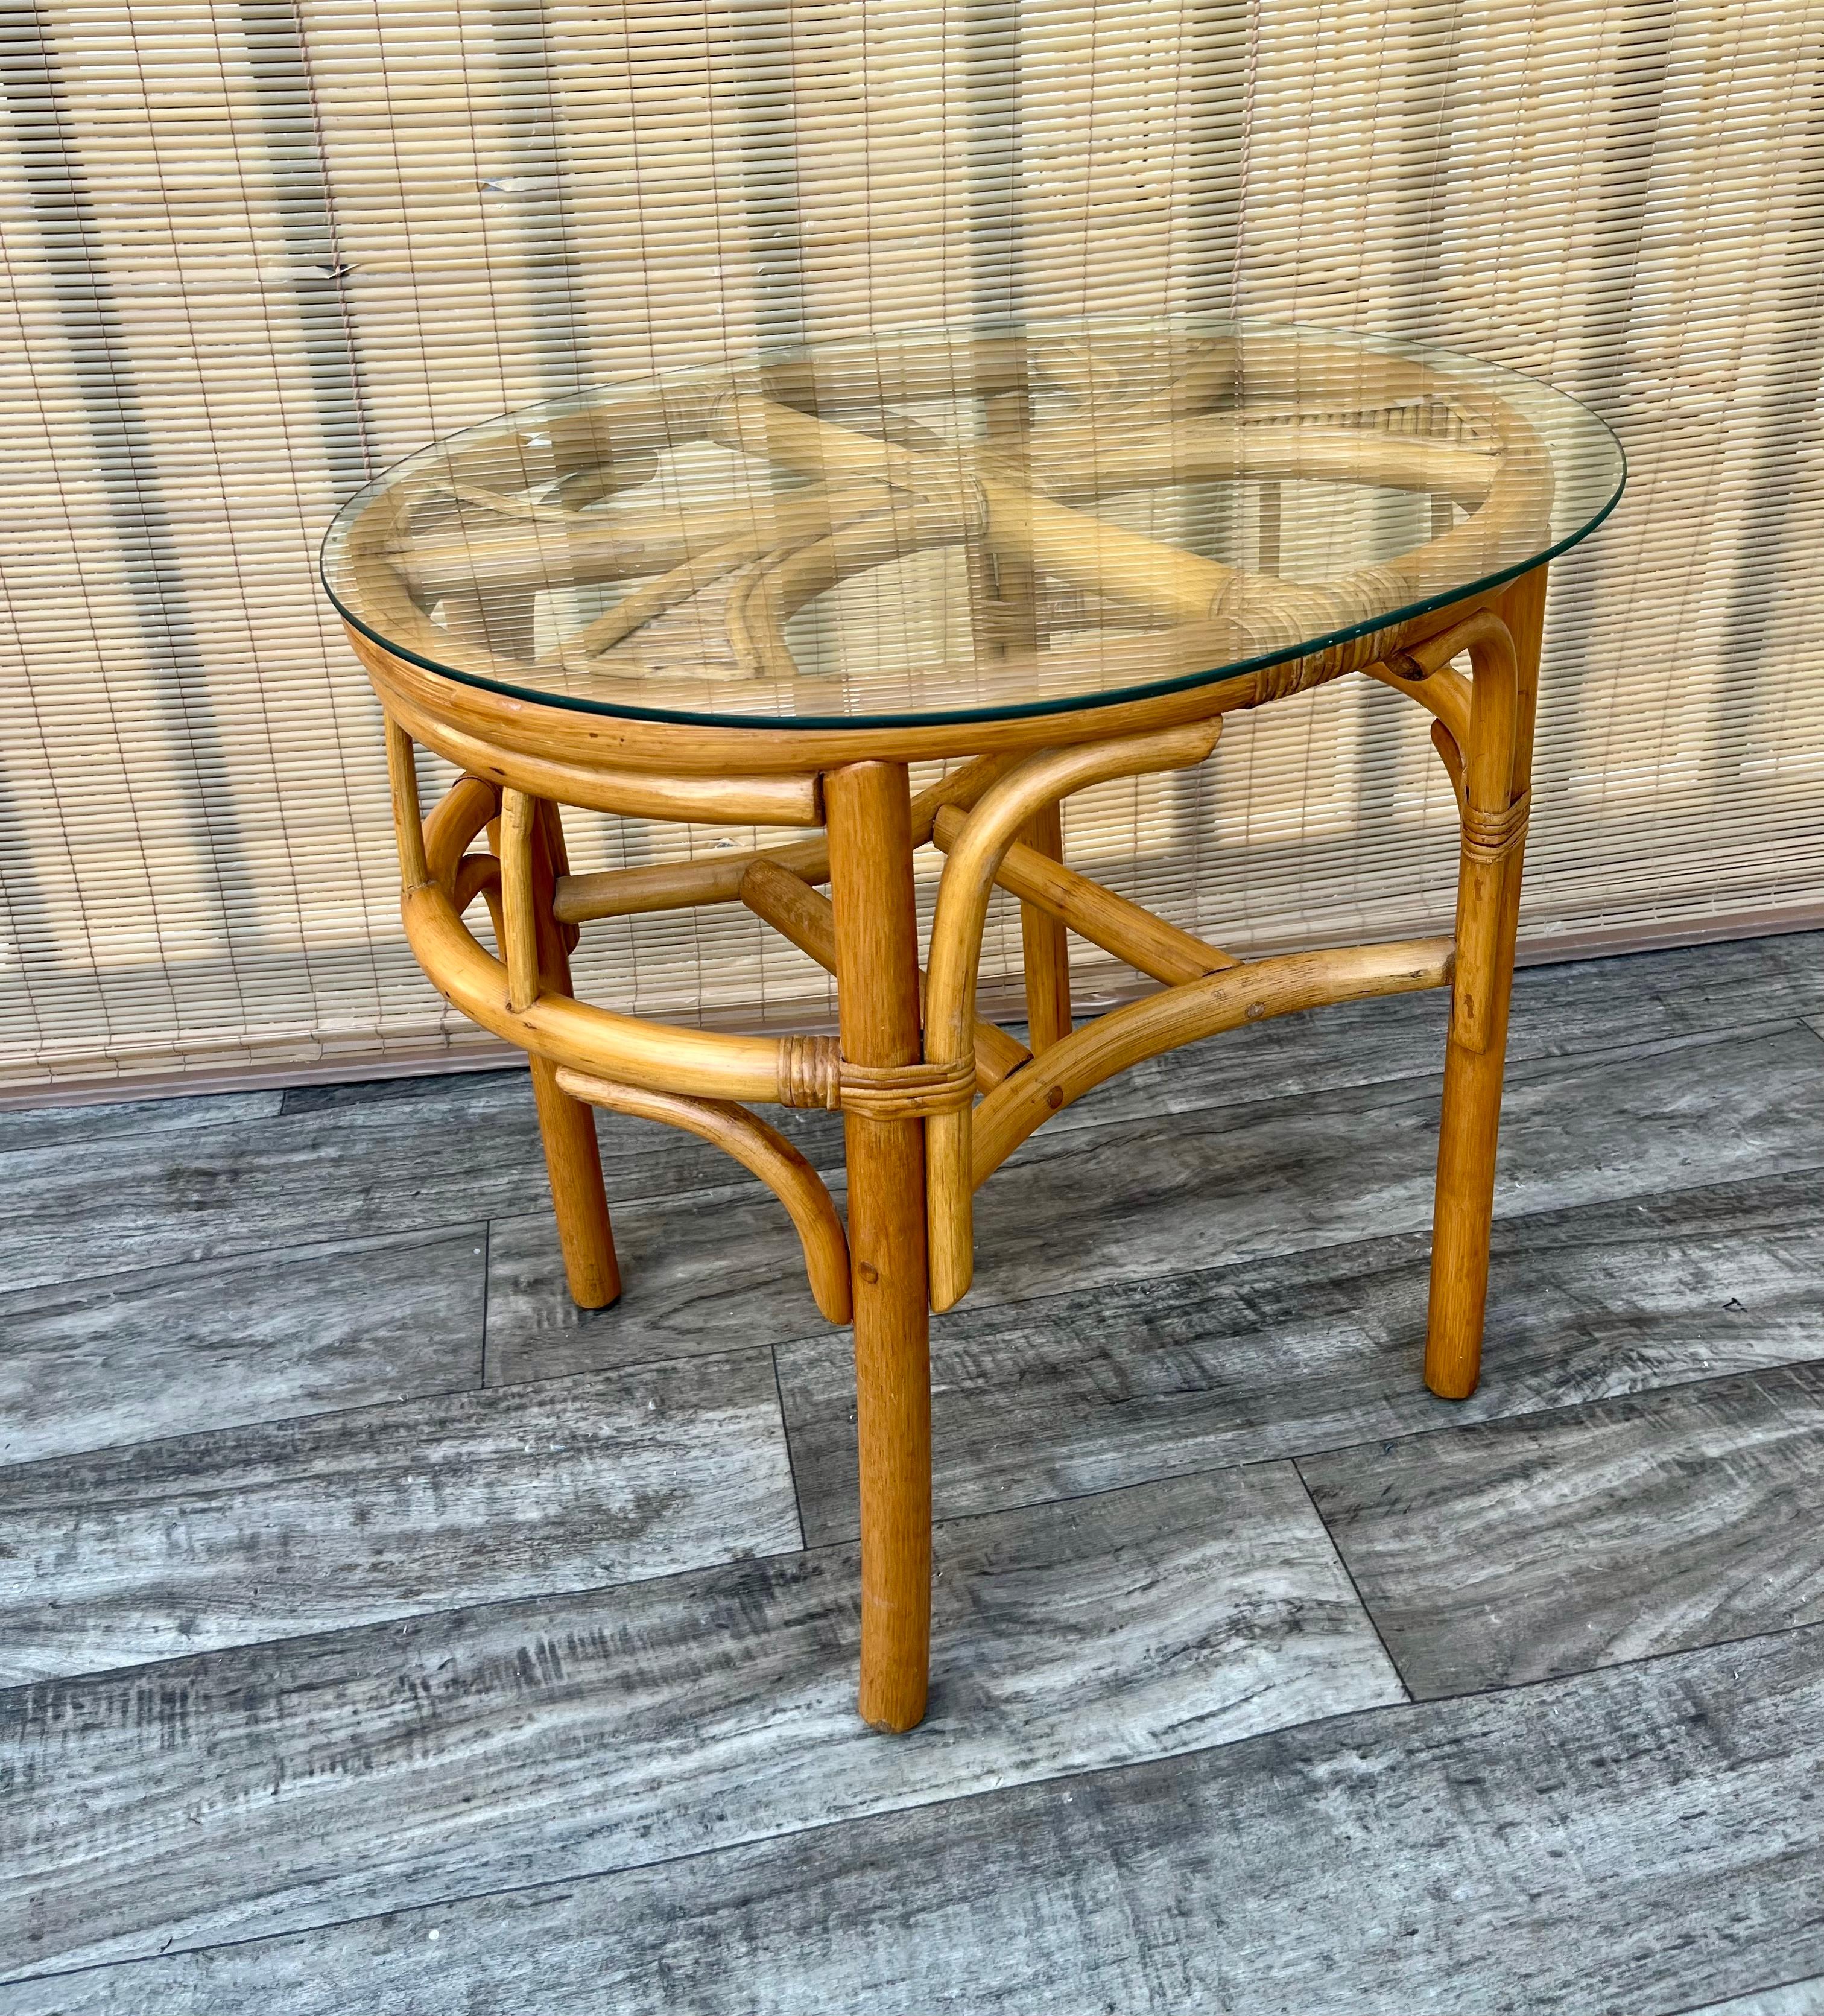 Vintage Costal Style/ Bohemian Split Bamboo and Rattan Boho Side Table. Circa 1980er Jahre
Das Gestell besteht aus Rattan und gespaltenem Bambus, die Kanten sind oval und die Glasplatte ist abnehmbar. 
In ausgezeichnetem Originalzustand mit geringen